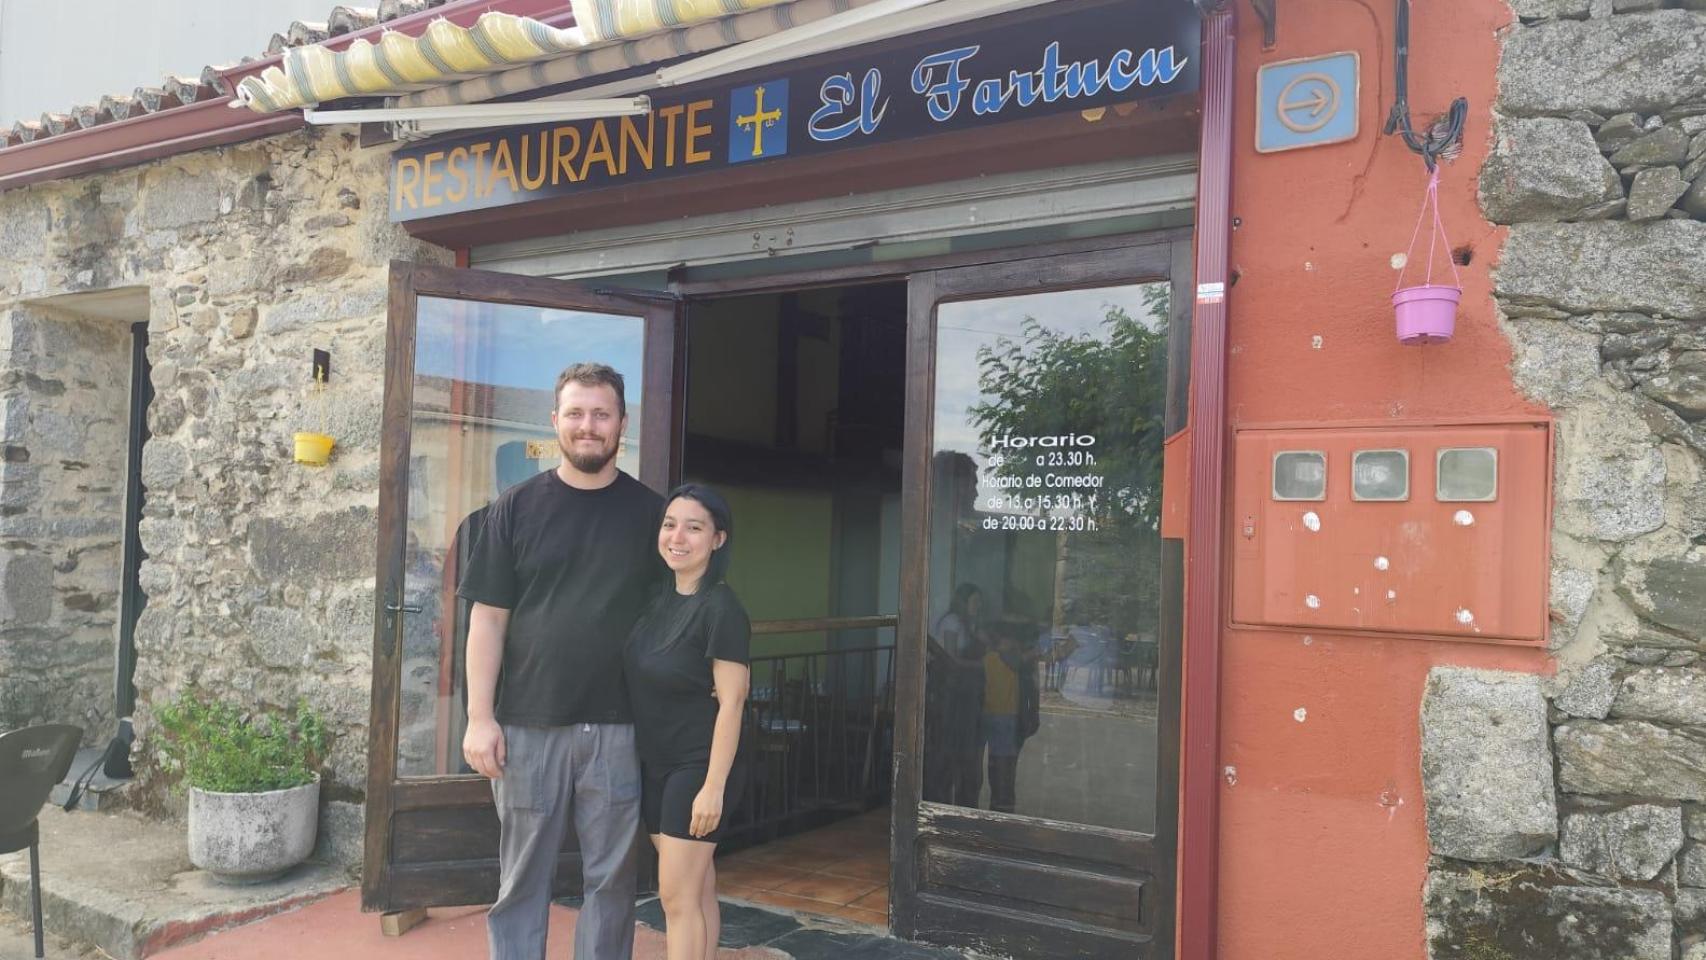 De Madrid a un pequeño pueblo de Salamanca para regentar un bar: Emmanuel y Diana, una pareja de emigrantes